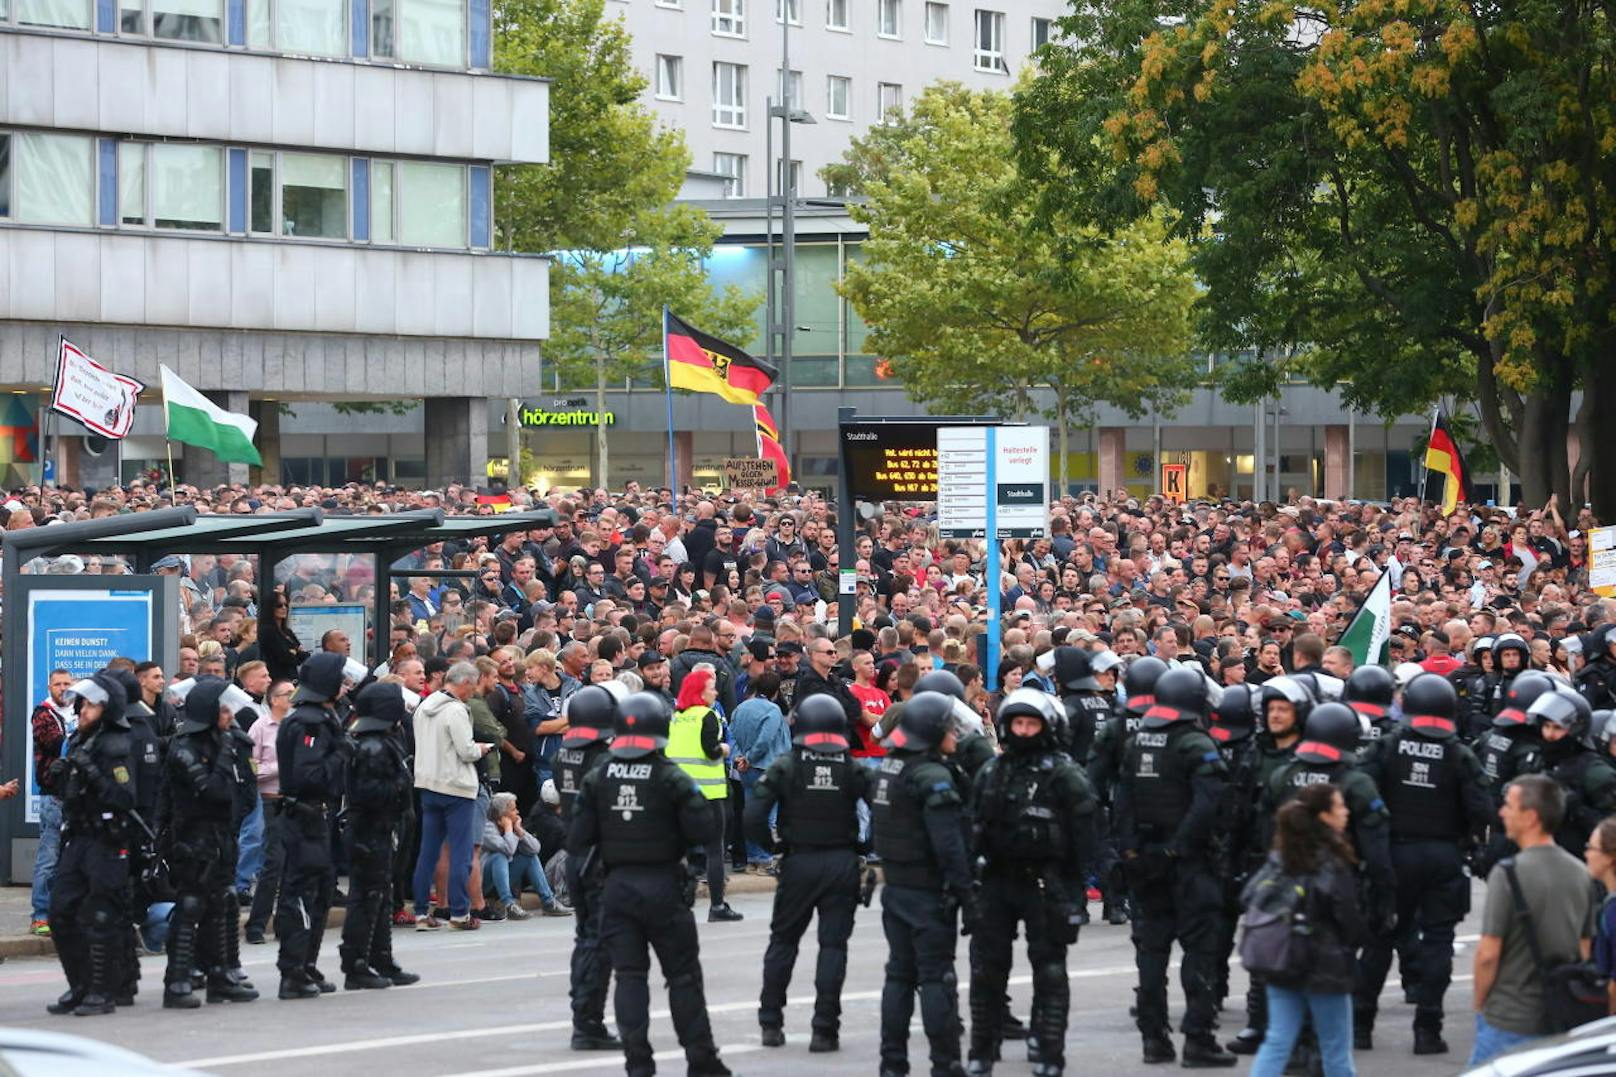 Einen Tag nach Übergriffen auf Ausländer in Chemnitz hat die Polizei versucht, ein Aufeinanderprallen von rechten und linken Gruppen zu verhindern.